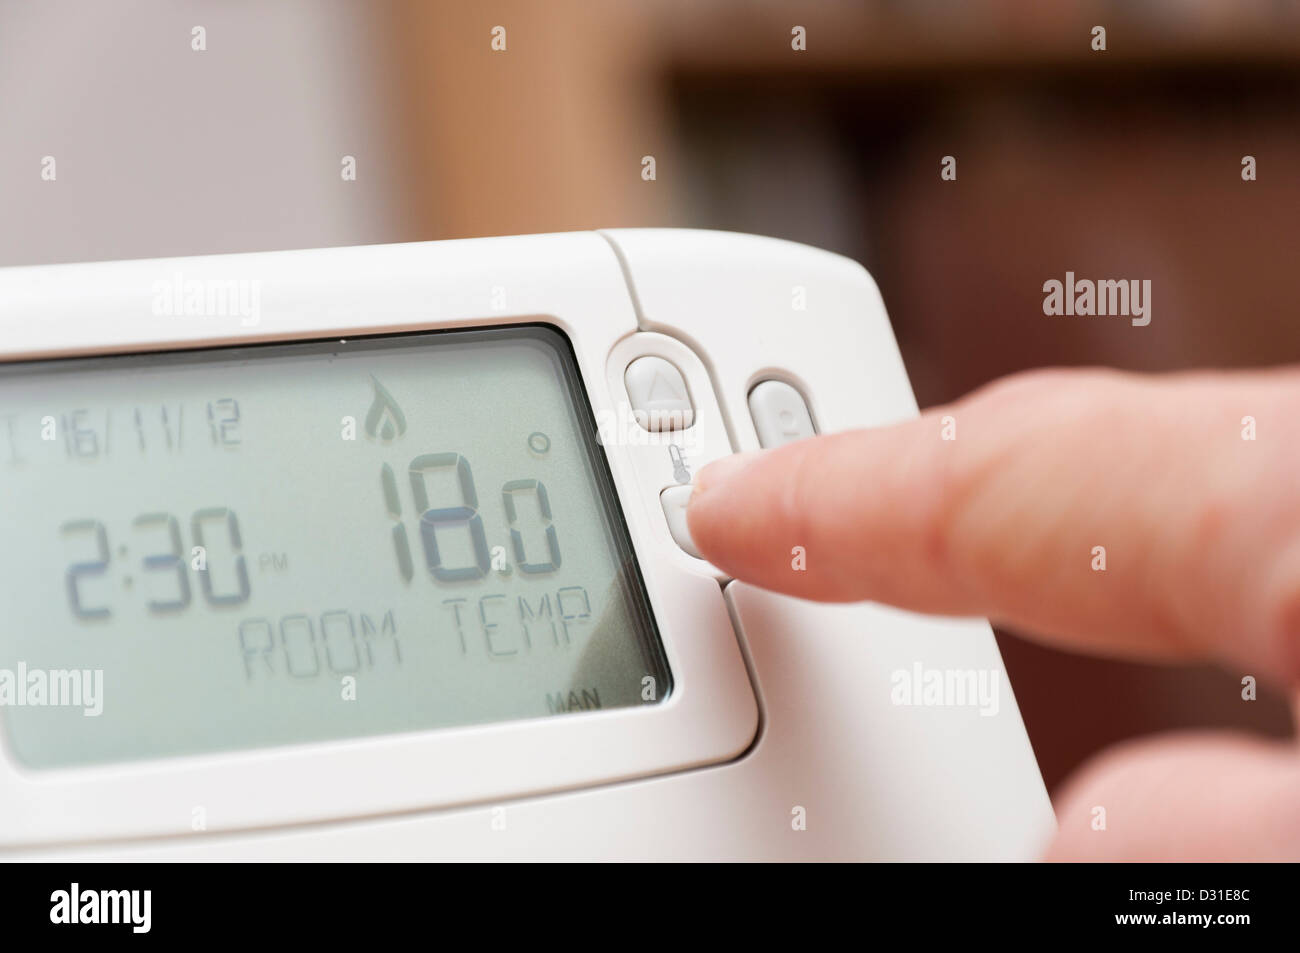 Regolazione della temperatura ambiente su un termostato di casa per risparmiare denaro sul riscaldamento bollette energetiche. Foto Stock